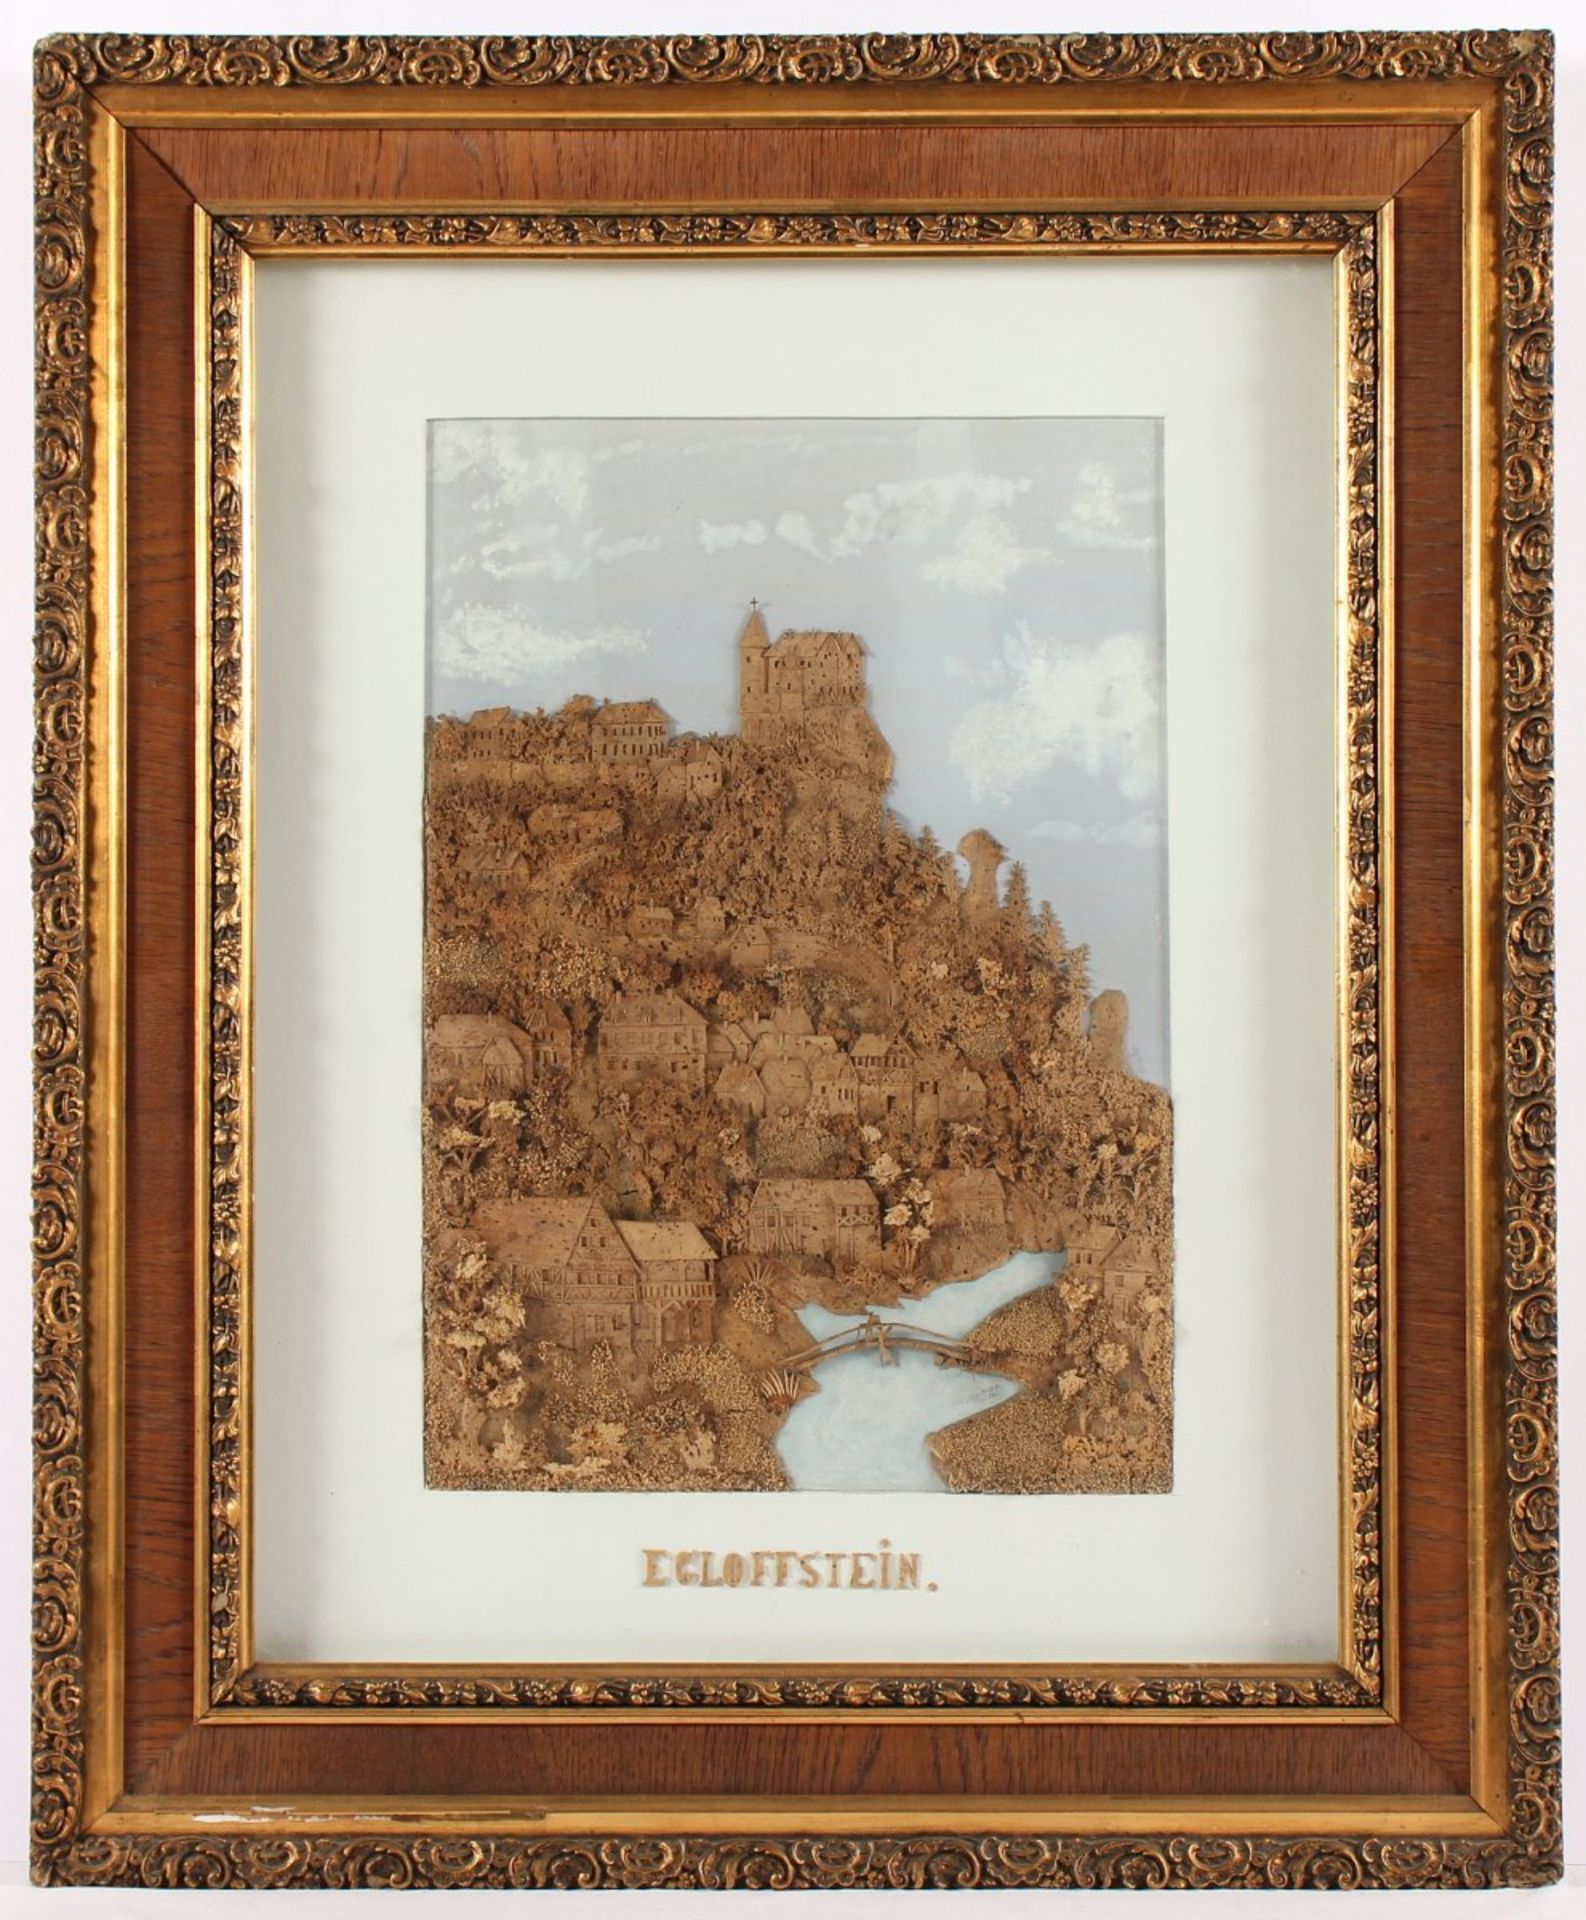 KORKBILD "EGLOFFSTEIN", Aquarell mit Deckweiß, Kork, beschnitzt, Darstellung der Burg Egloffstein,